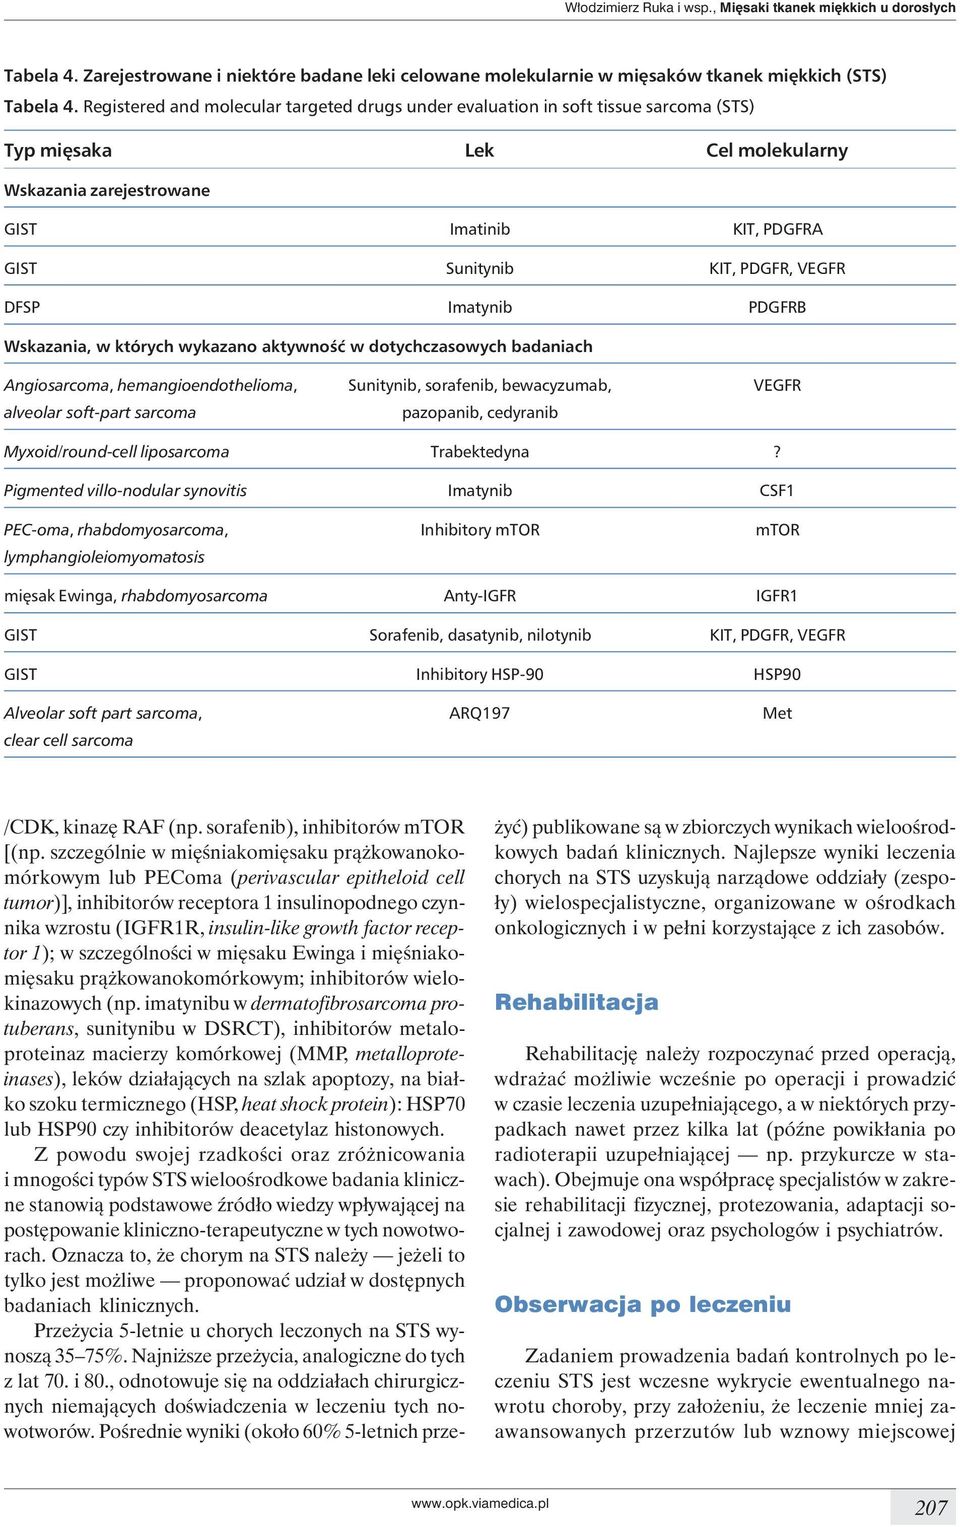 VEGFR DFSP Imatynib PDGFRB Wskazania, w których wykazano aktywność w dotychczasowych badaniach Angiosarcoma, hemangioendothelioma, Sunitynib, sorafenib, bewacyzumab, VEGFR alveolar soft-part sarcoma